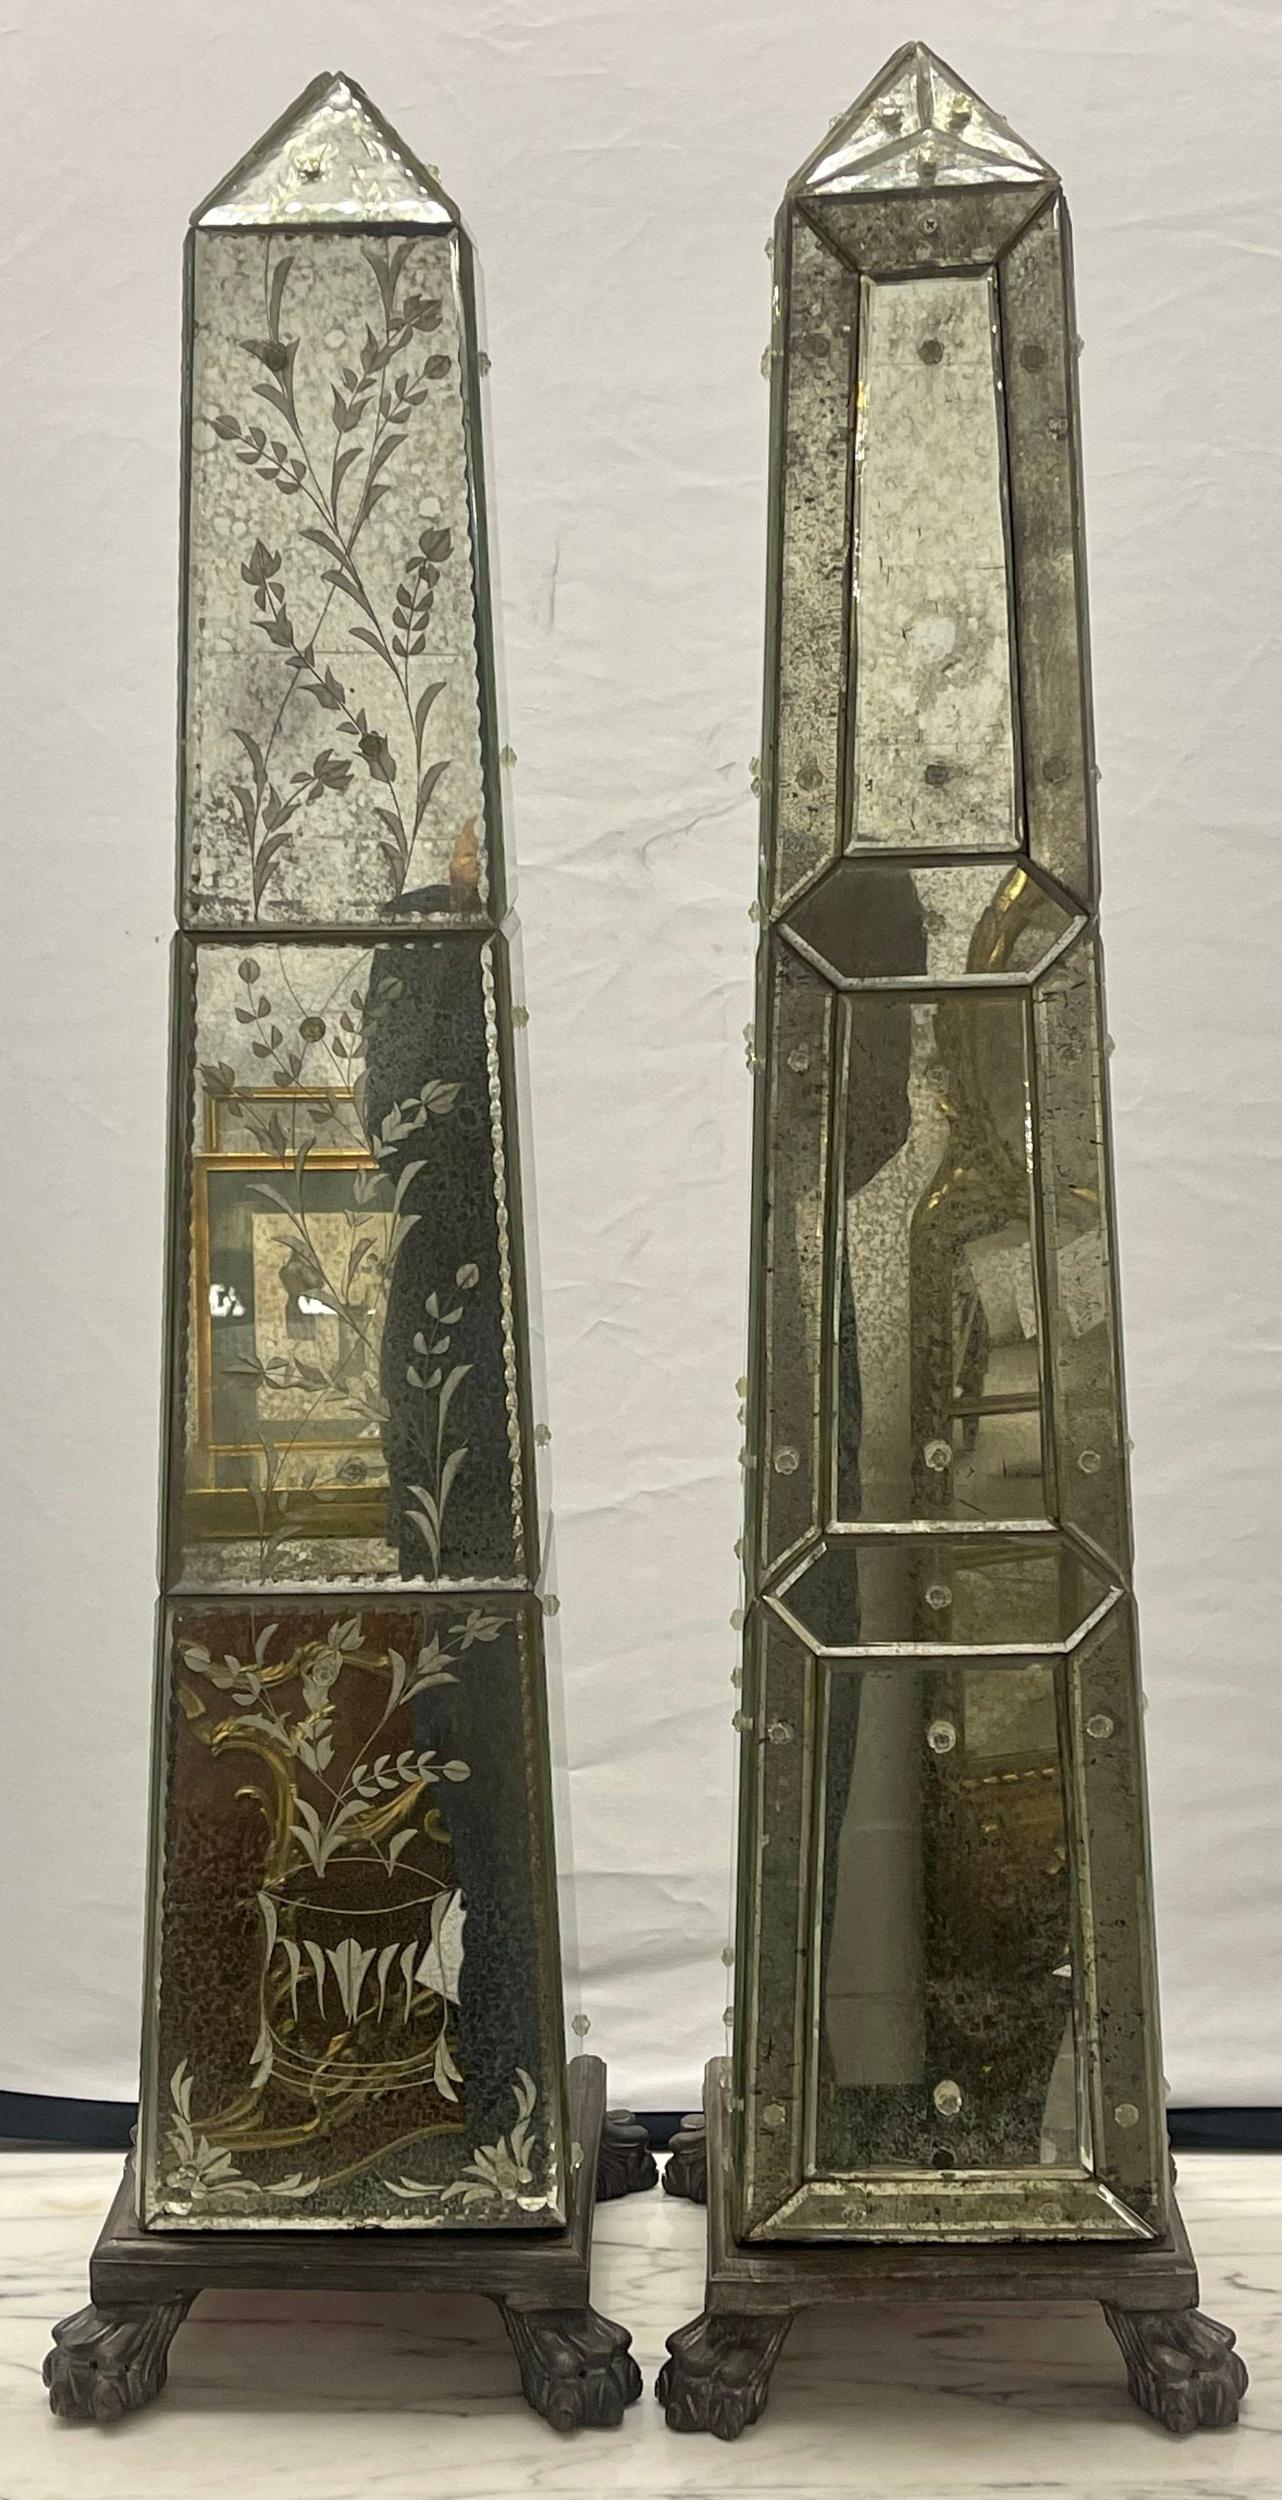 Ein verspiegelter venezianischer Obelisk. Mit 12 geätzten Glaspaneelen an vier Seiten. Das Ganze steht auf einem hölzernen Klauenfußsockel. Einer von einem kompatiblen Paar. Der Preis gilt nur für eine Person.